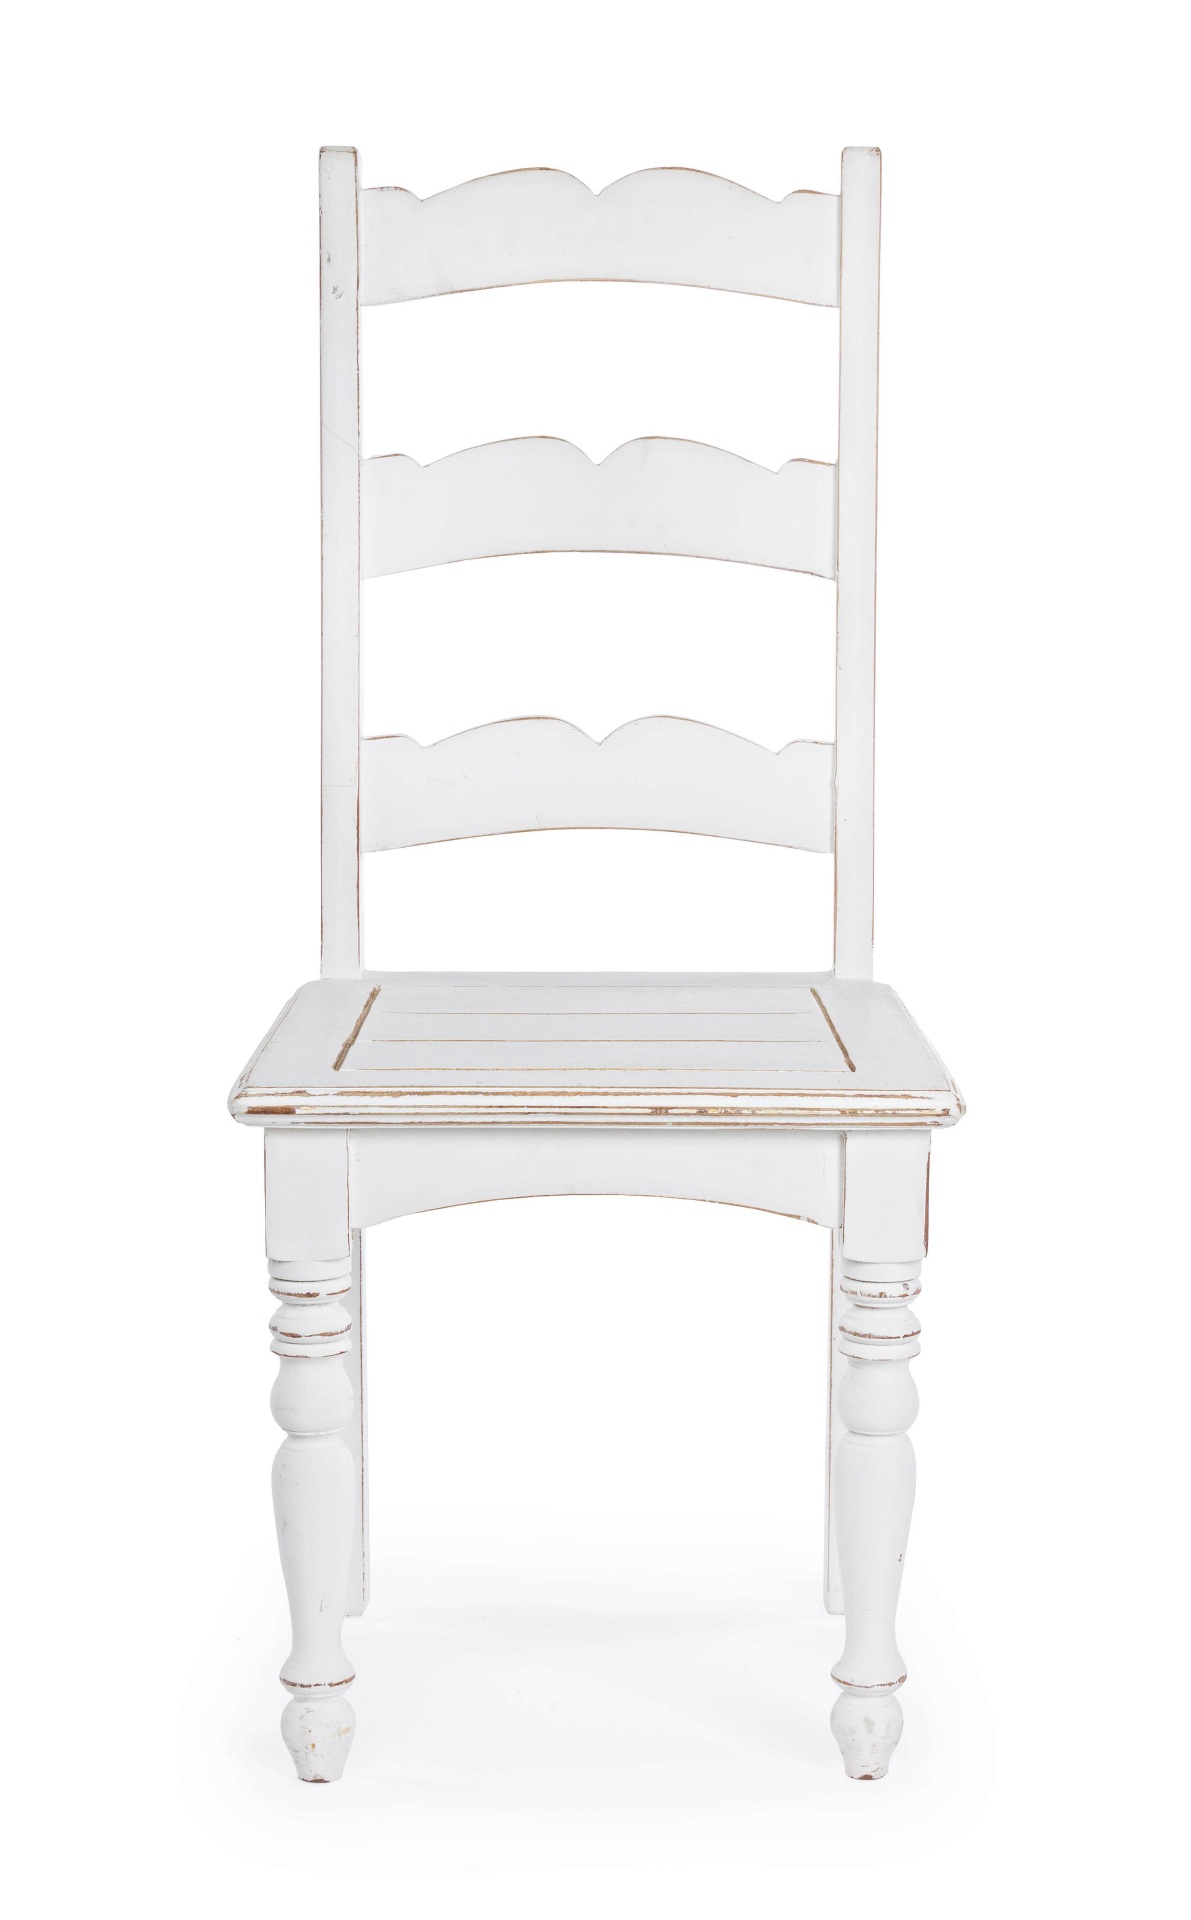 Der Stuhl Colette überzeugt mit seinem klassischen Design. Gefertigt wurde der Stuhl aus Mangoholz, welches eine weiße Feinbearbeitung durch Nitrozellulose erhalten hat und somit einen weißen Farbton hat.